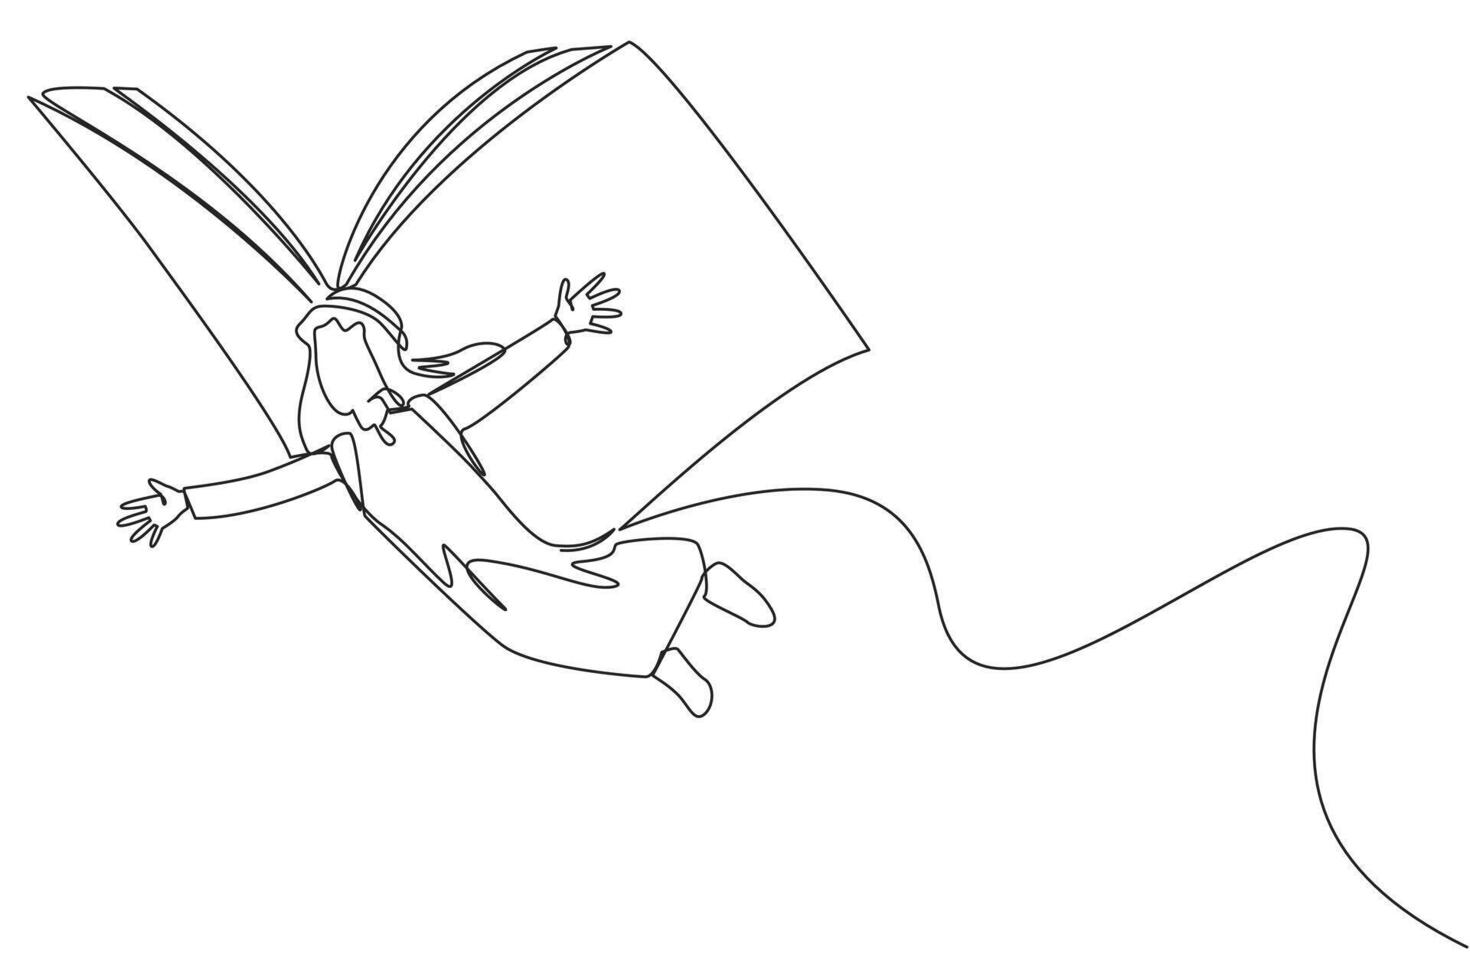 Single einer Linie Zeichnung arabisch Mann fliegend mit Flügel Das Kommen Sie von ein öffnen groß Buch. das Metapher getragen Weg mit das Handlung. konstruktiv Fantasie. kontinuierlich Linie Design Grafik Illustration vektor